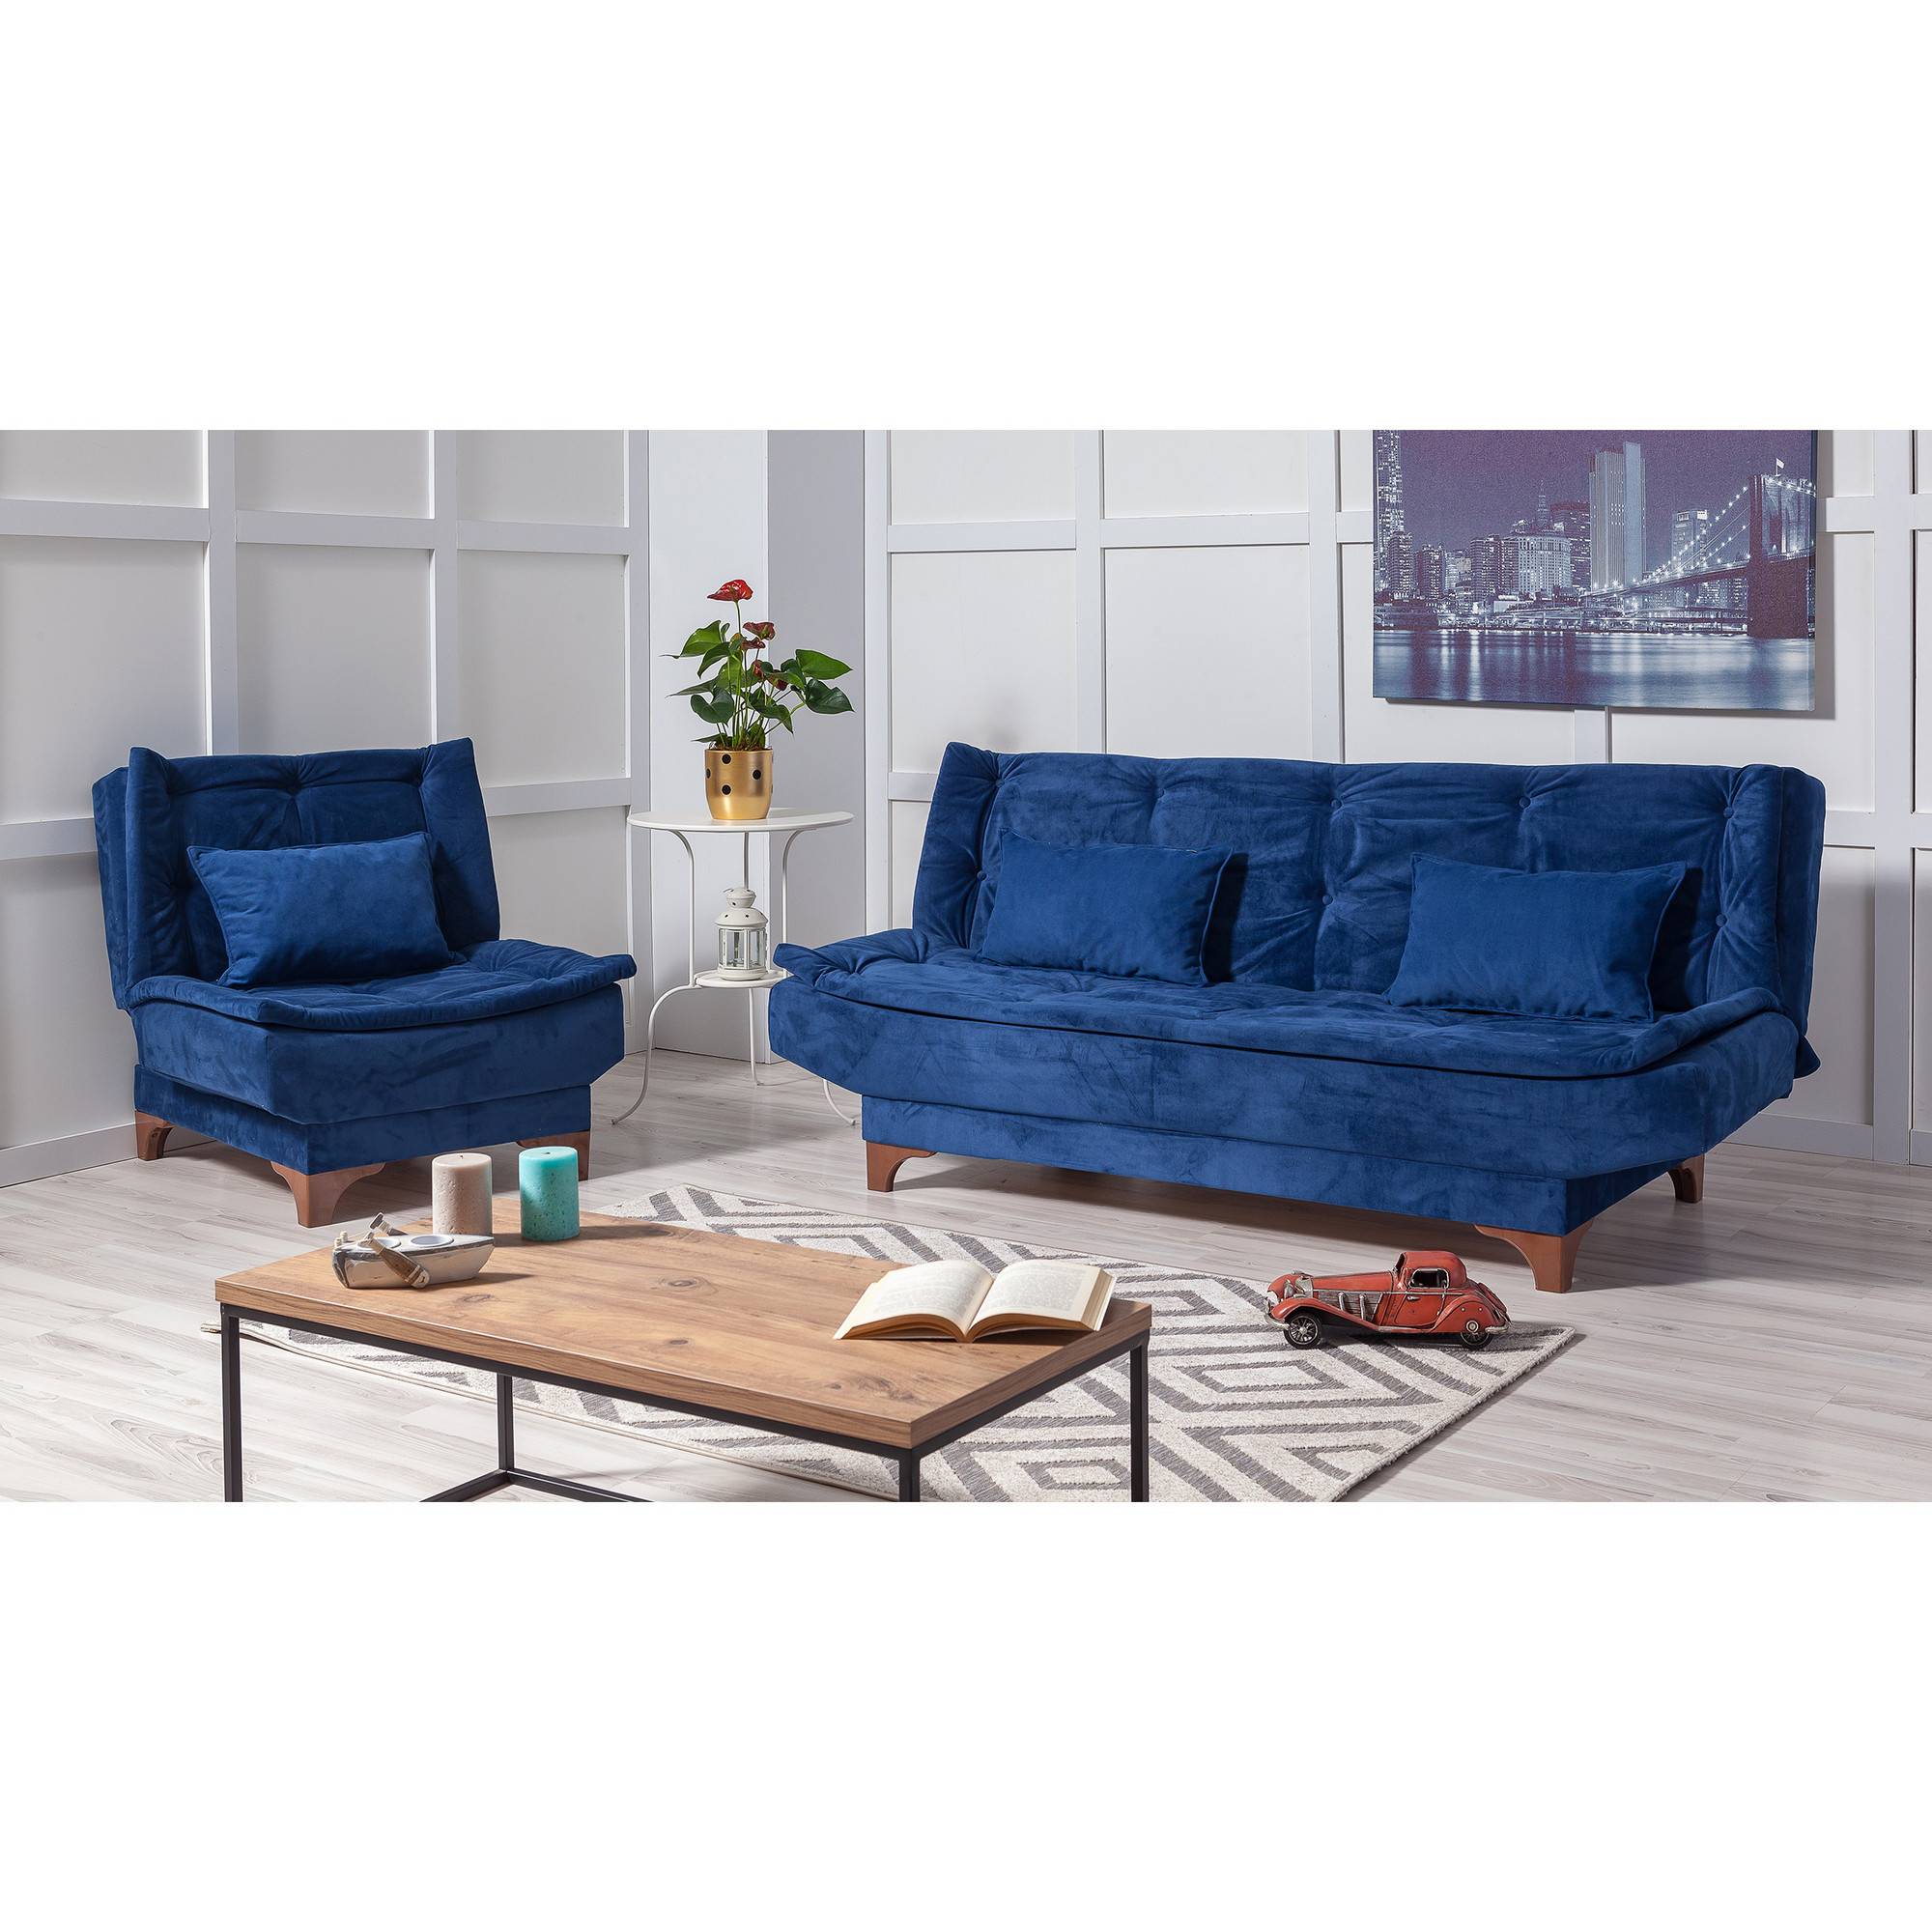 Conjunto de sofá y sillón convertible de 3 plazas Lefkada Tela Azul Oscuro